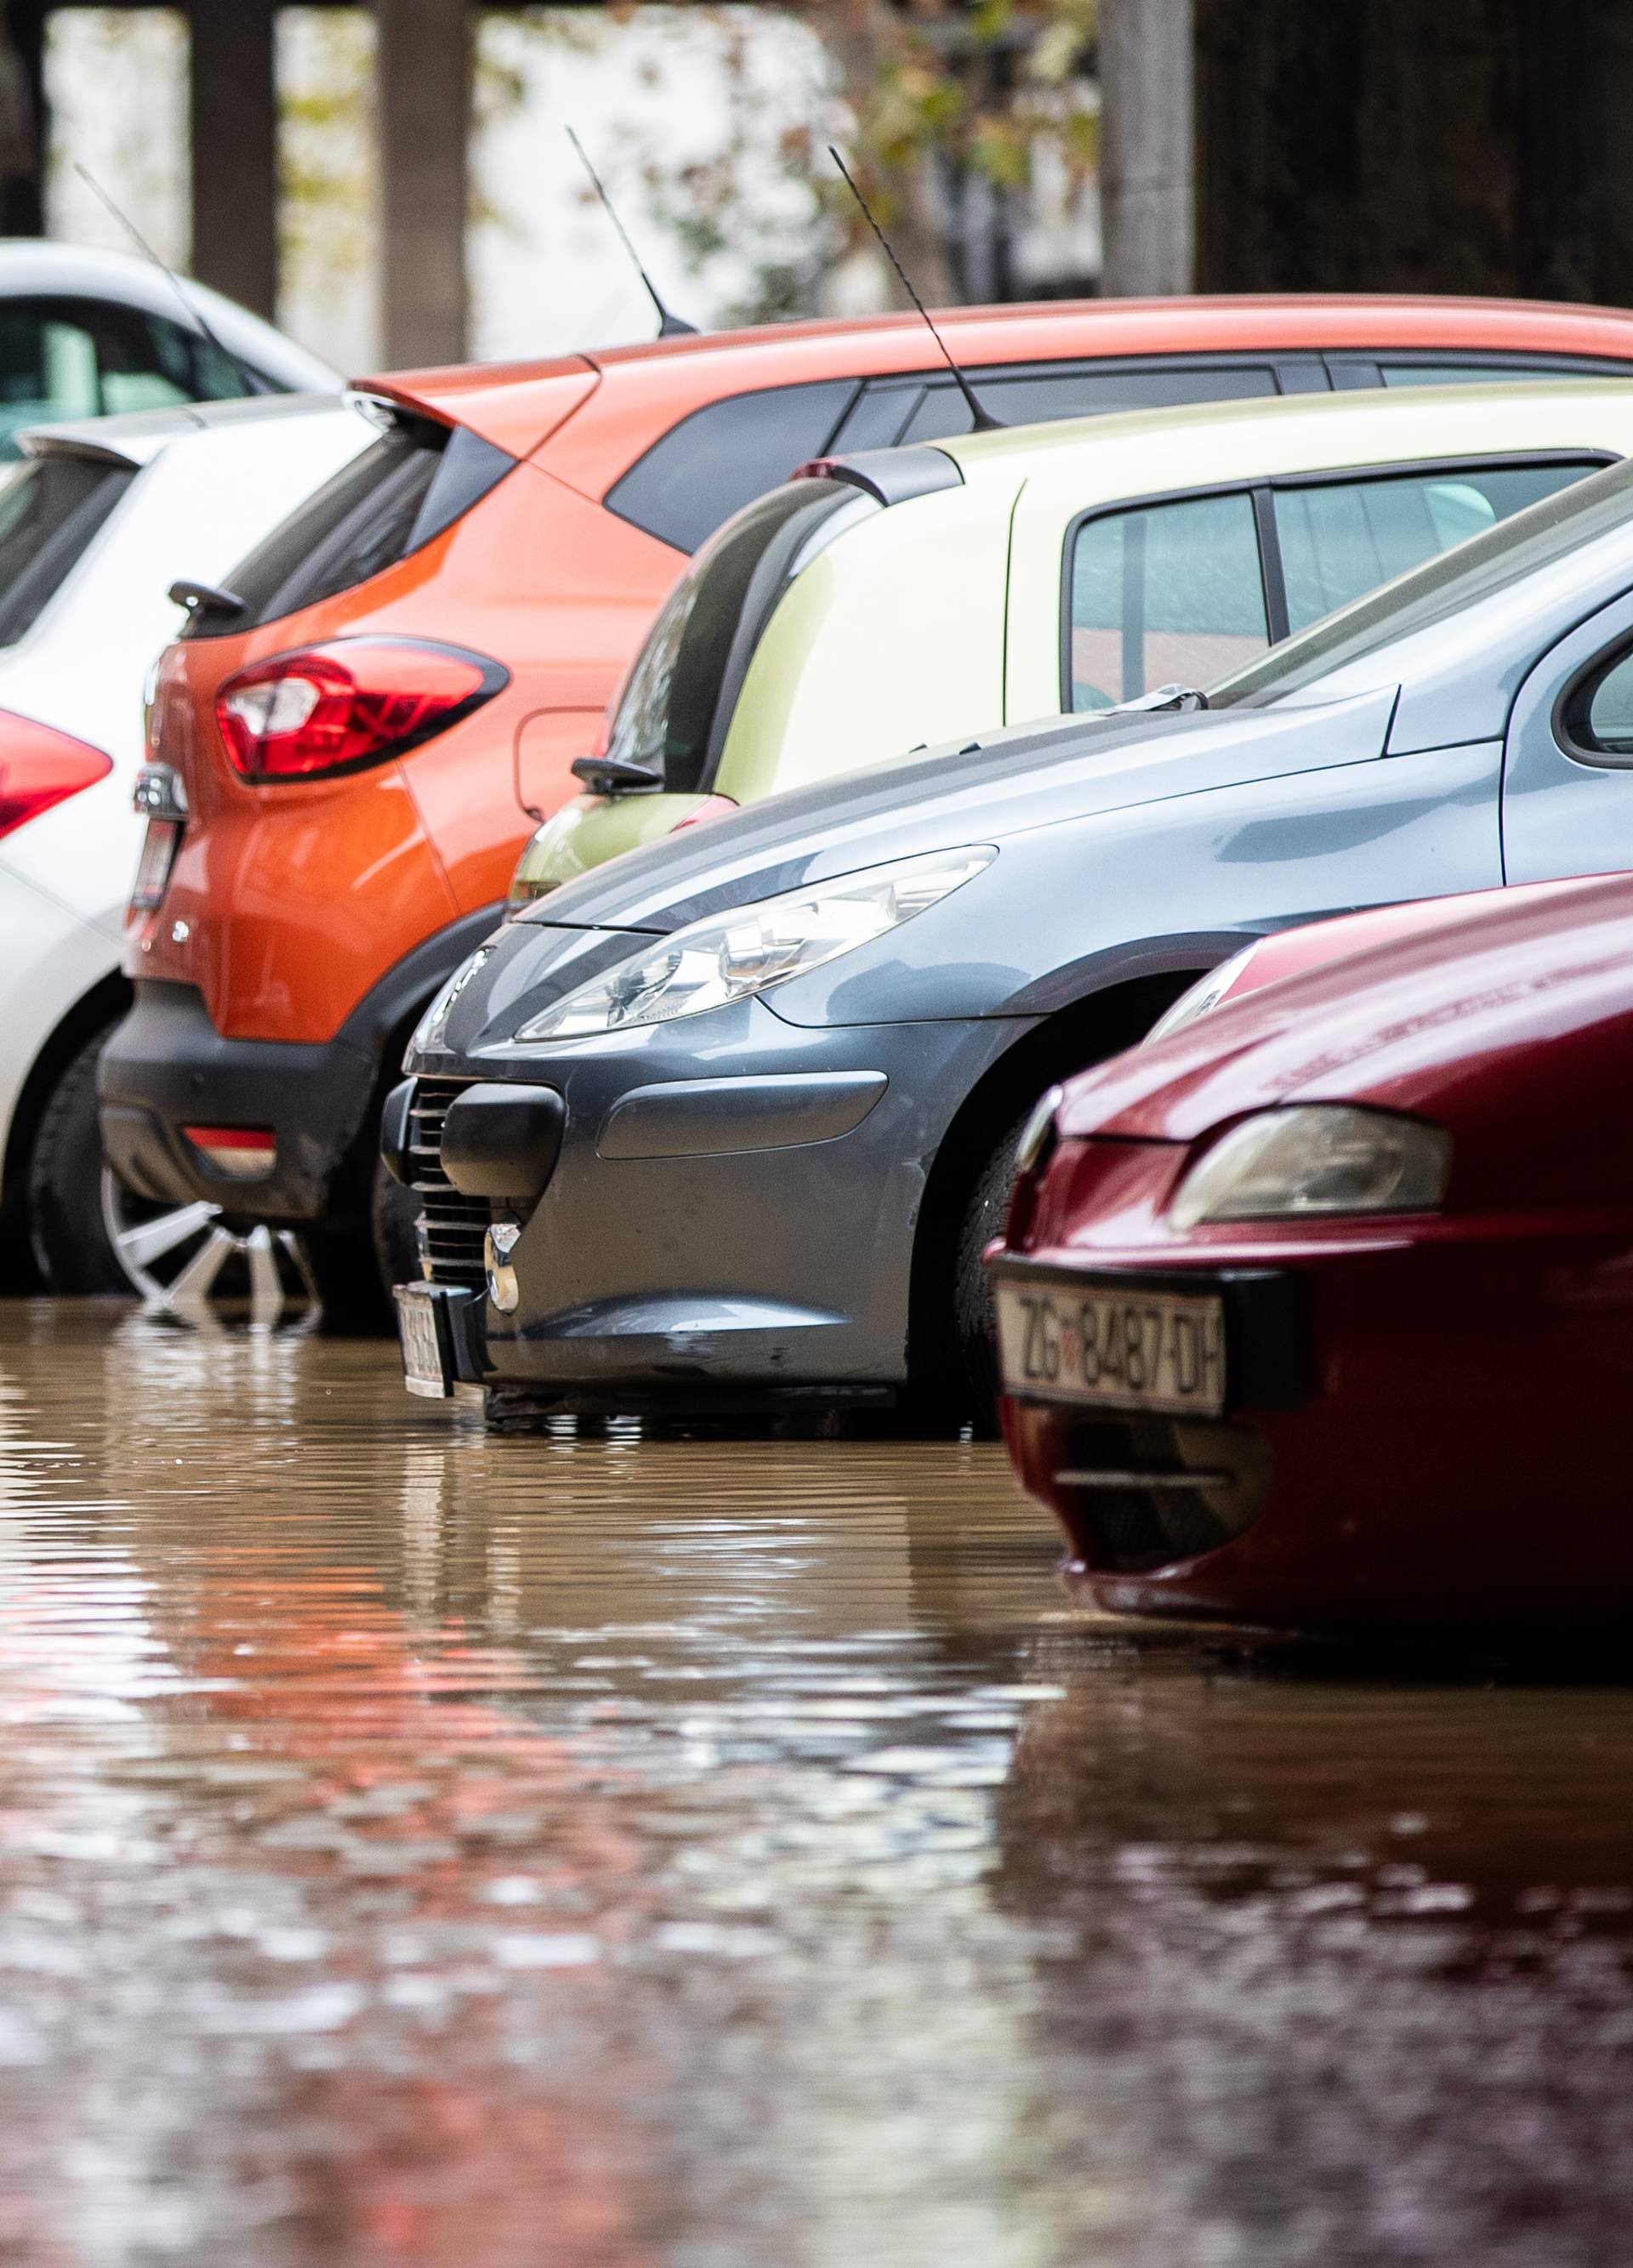 Siget pod vodom: Puknula cijev na parkingu, automobili plivaju